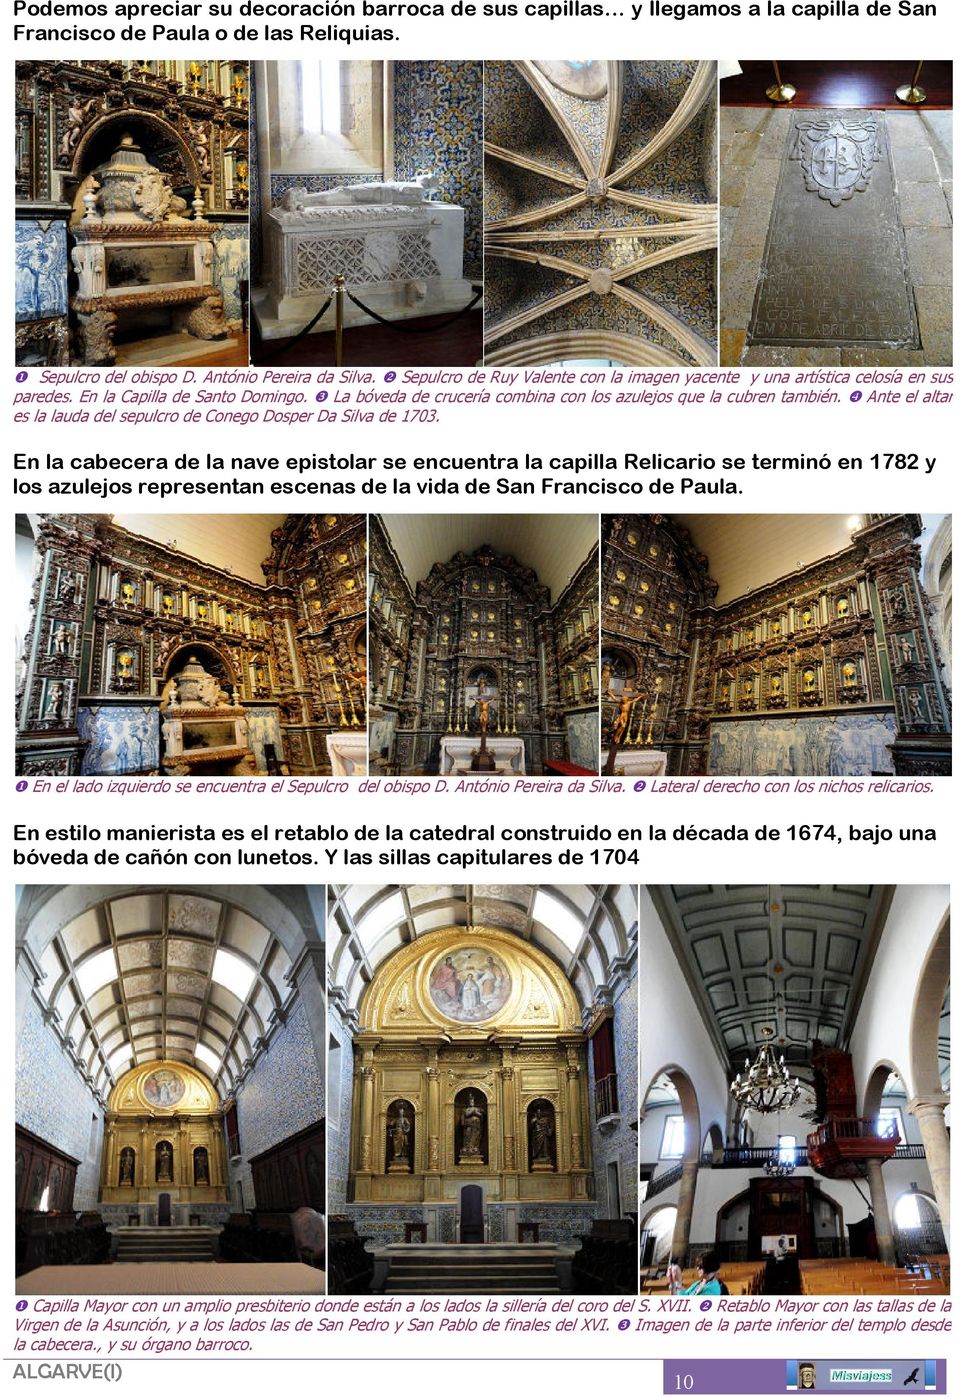 ❹ Ante el altar es la lauda del sepulcro de Conego Dosper Da Silva de 1703.